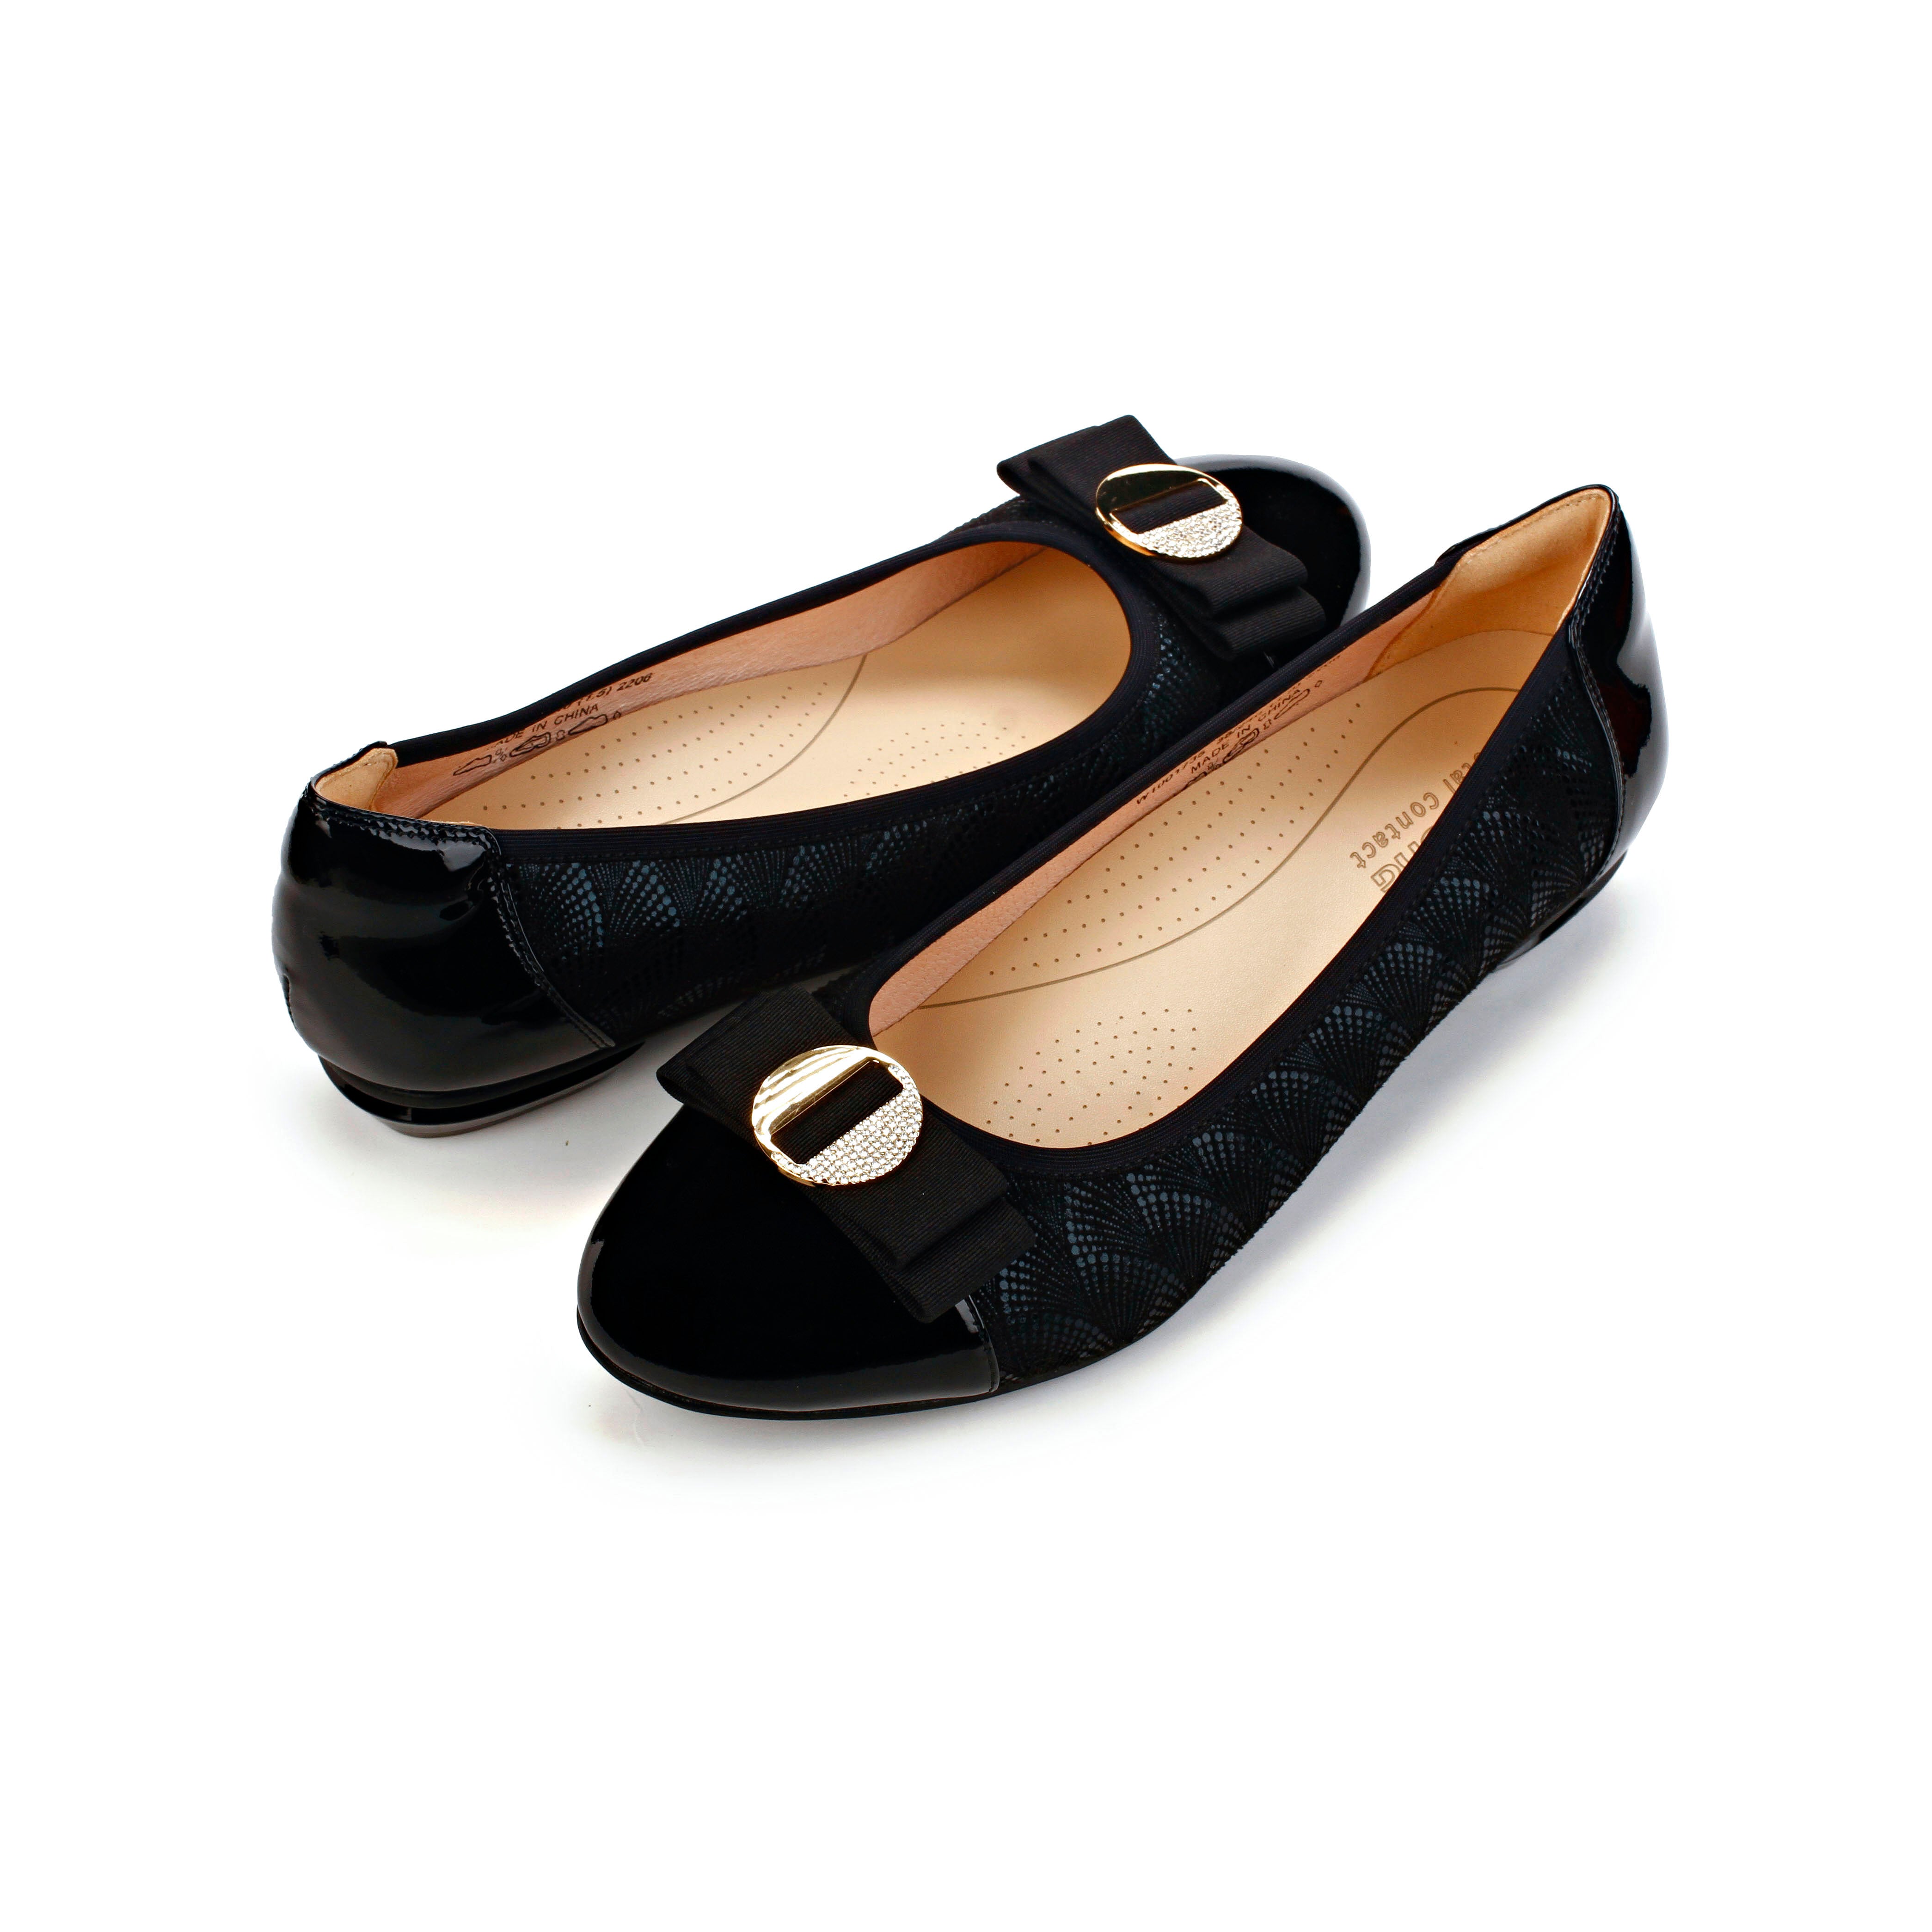 Dr. Kong Esi-Flex Women's Casual Shoes W1001735